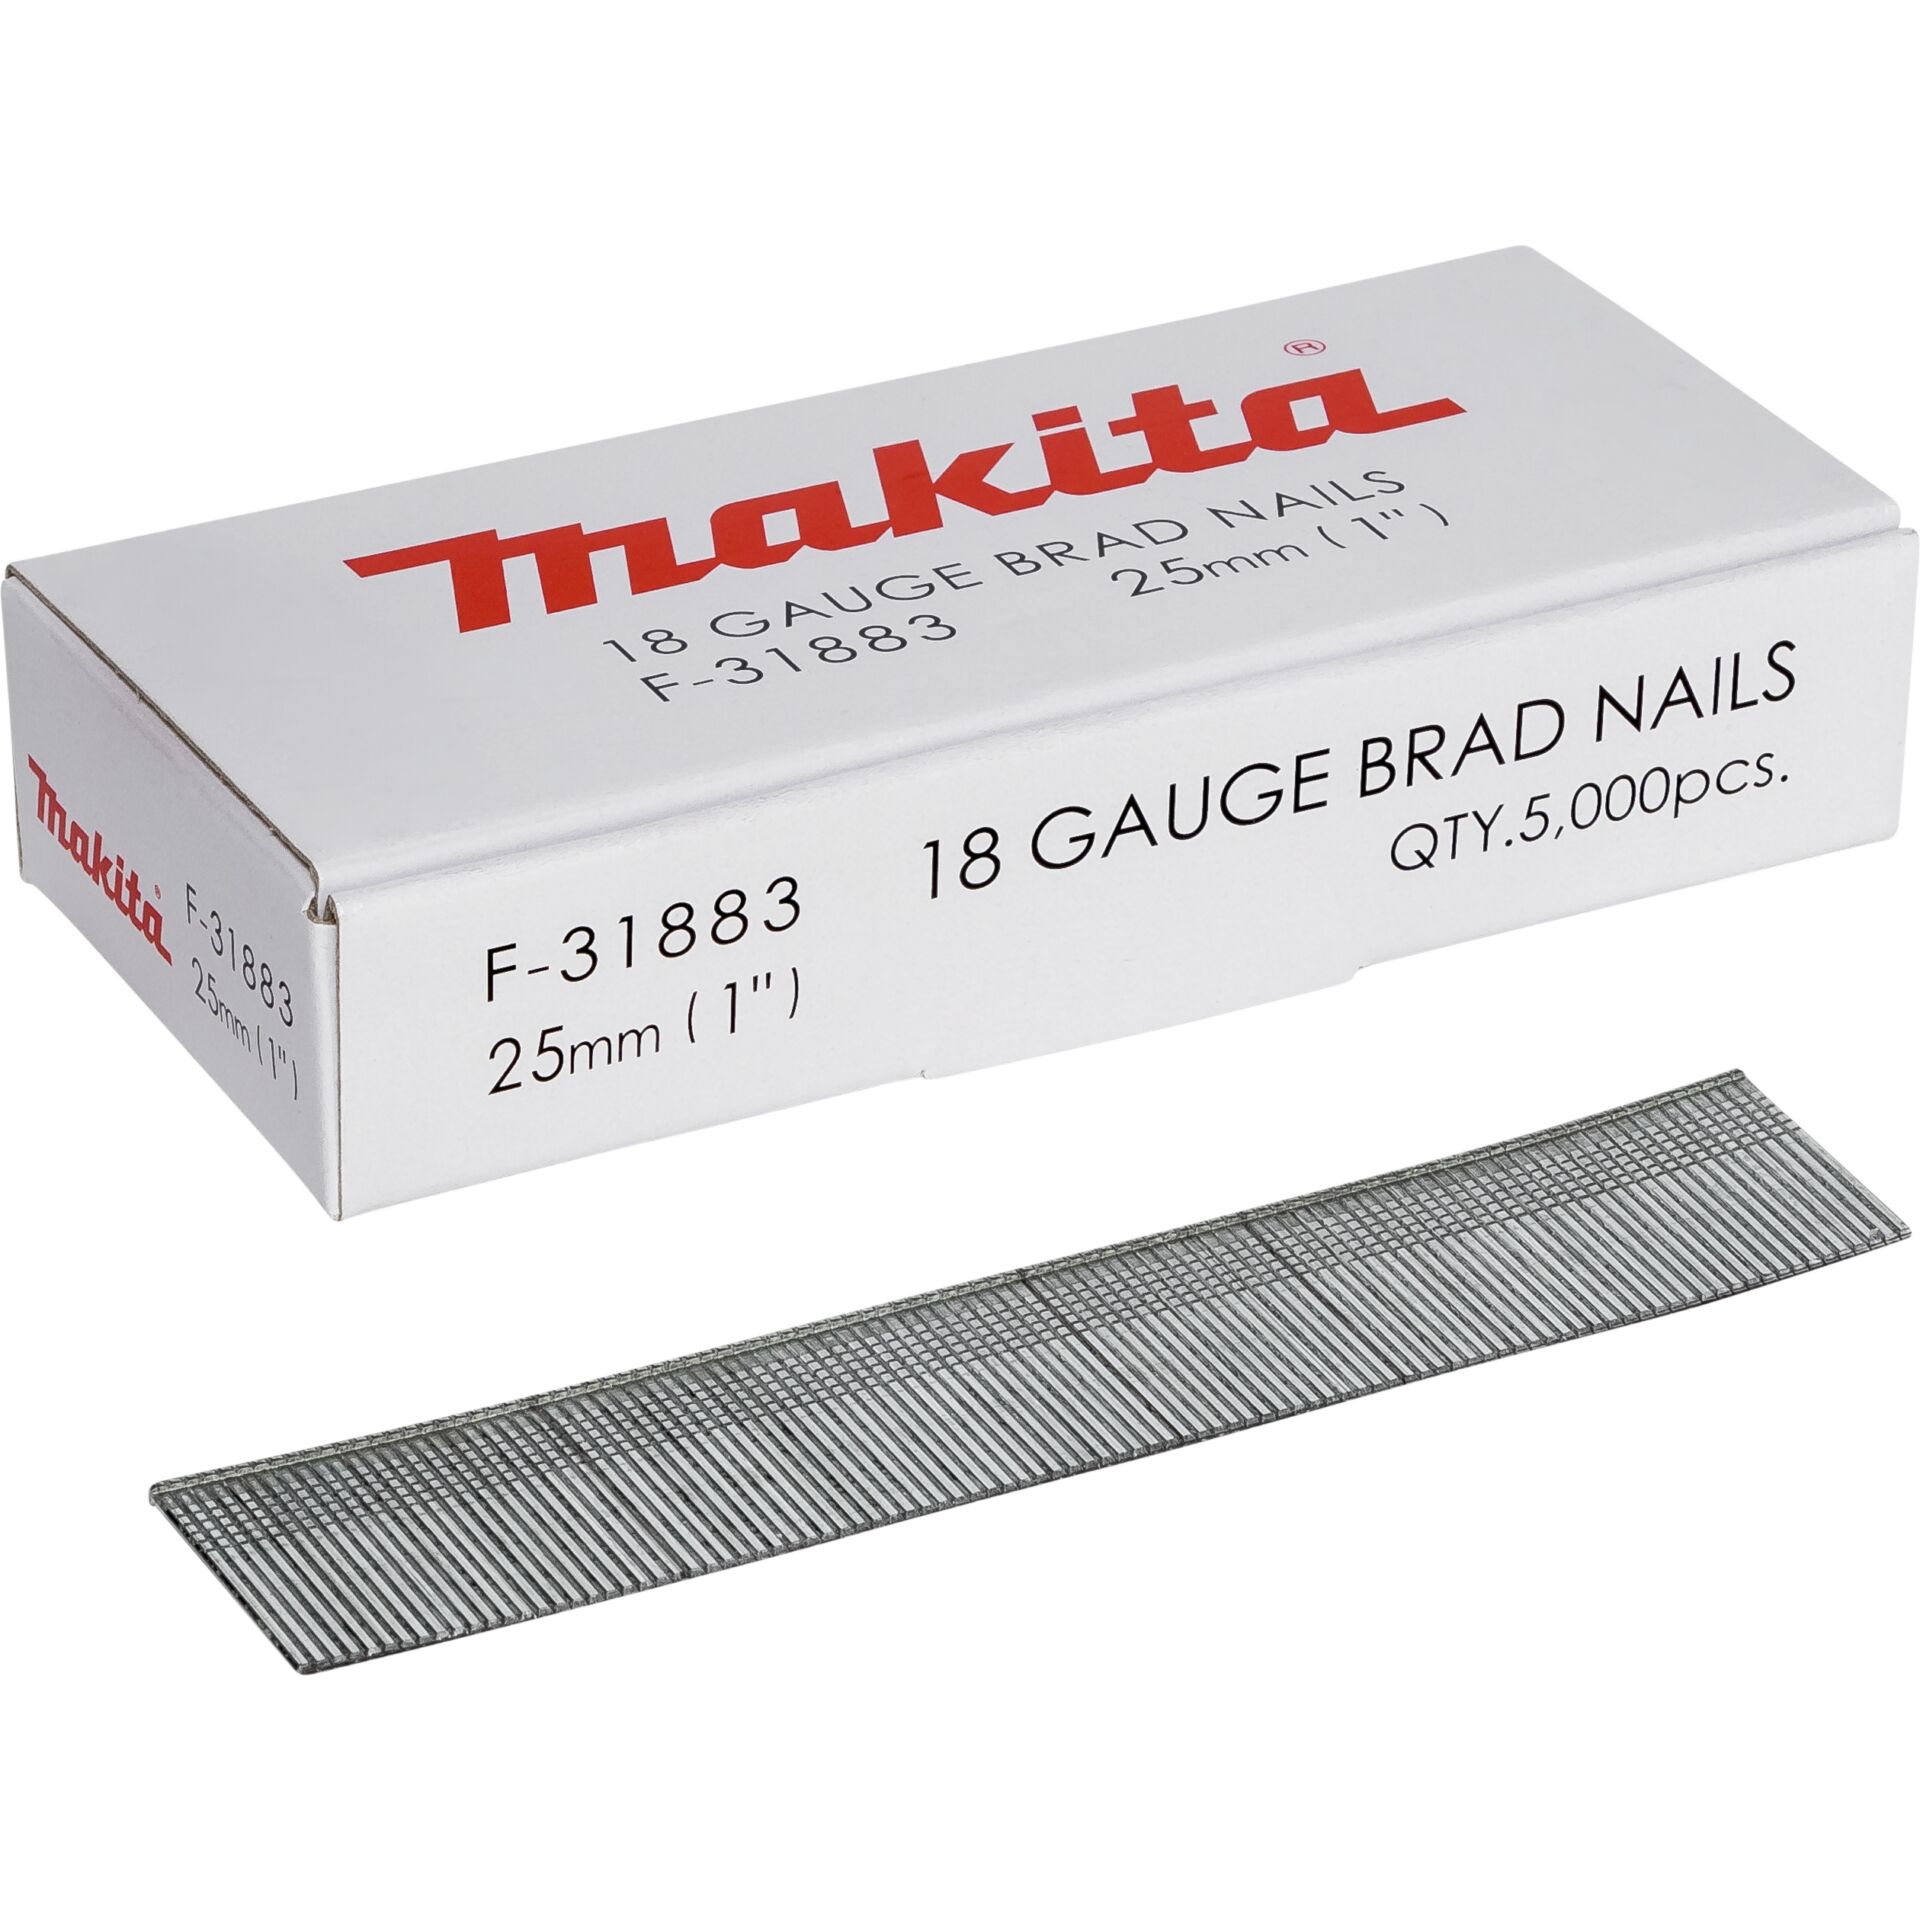 Makita Gauge Brad Nails 1,2x25mm F-31883  5000 pcs.